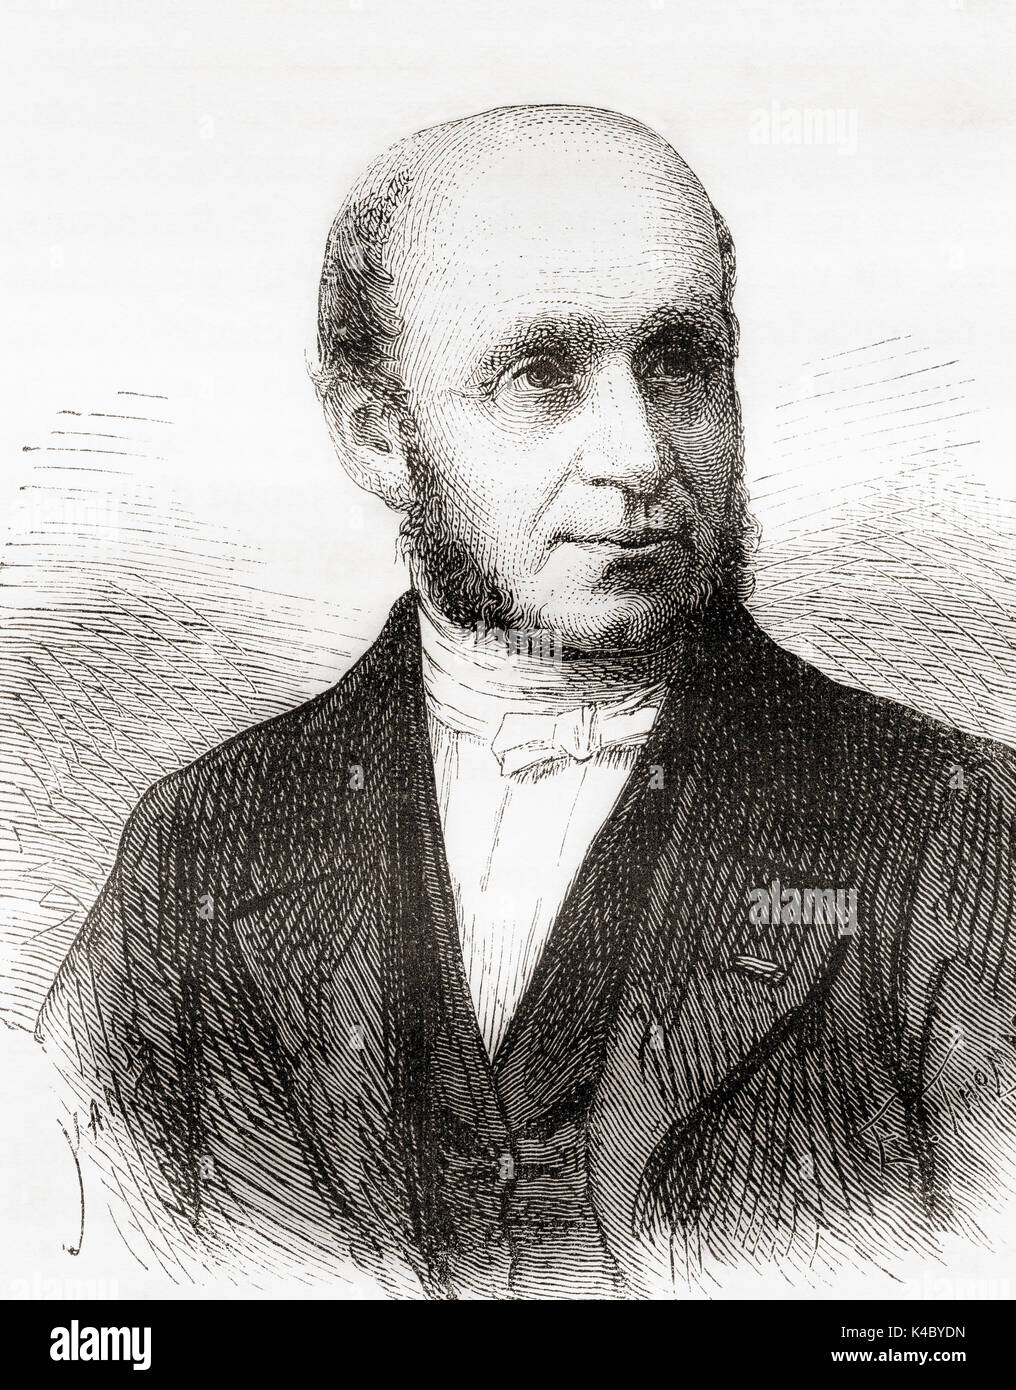 Guillaume-Benjamin Duchenne de Boulogne-Amand, 1806 -1875. Neurologue français. De : Les merveilles de la science, publié en 1870. Banque D'Images